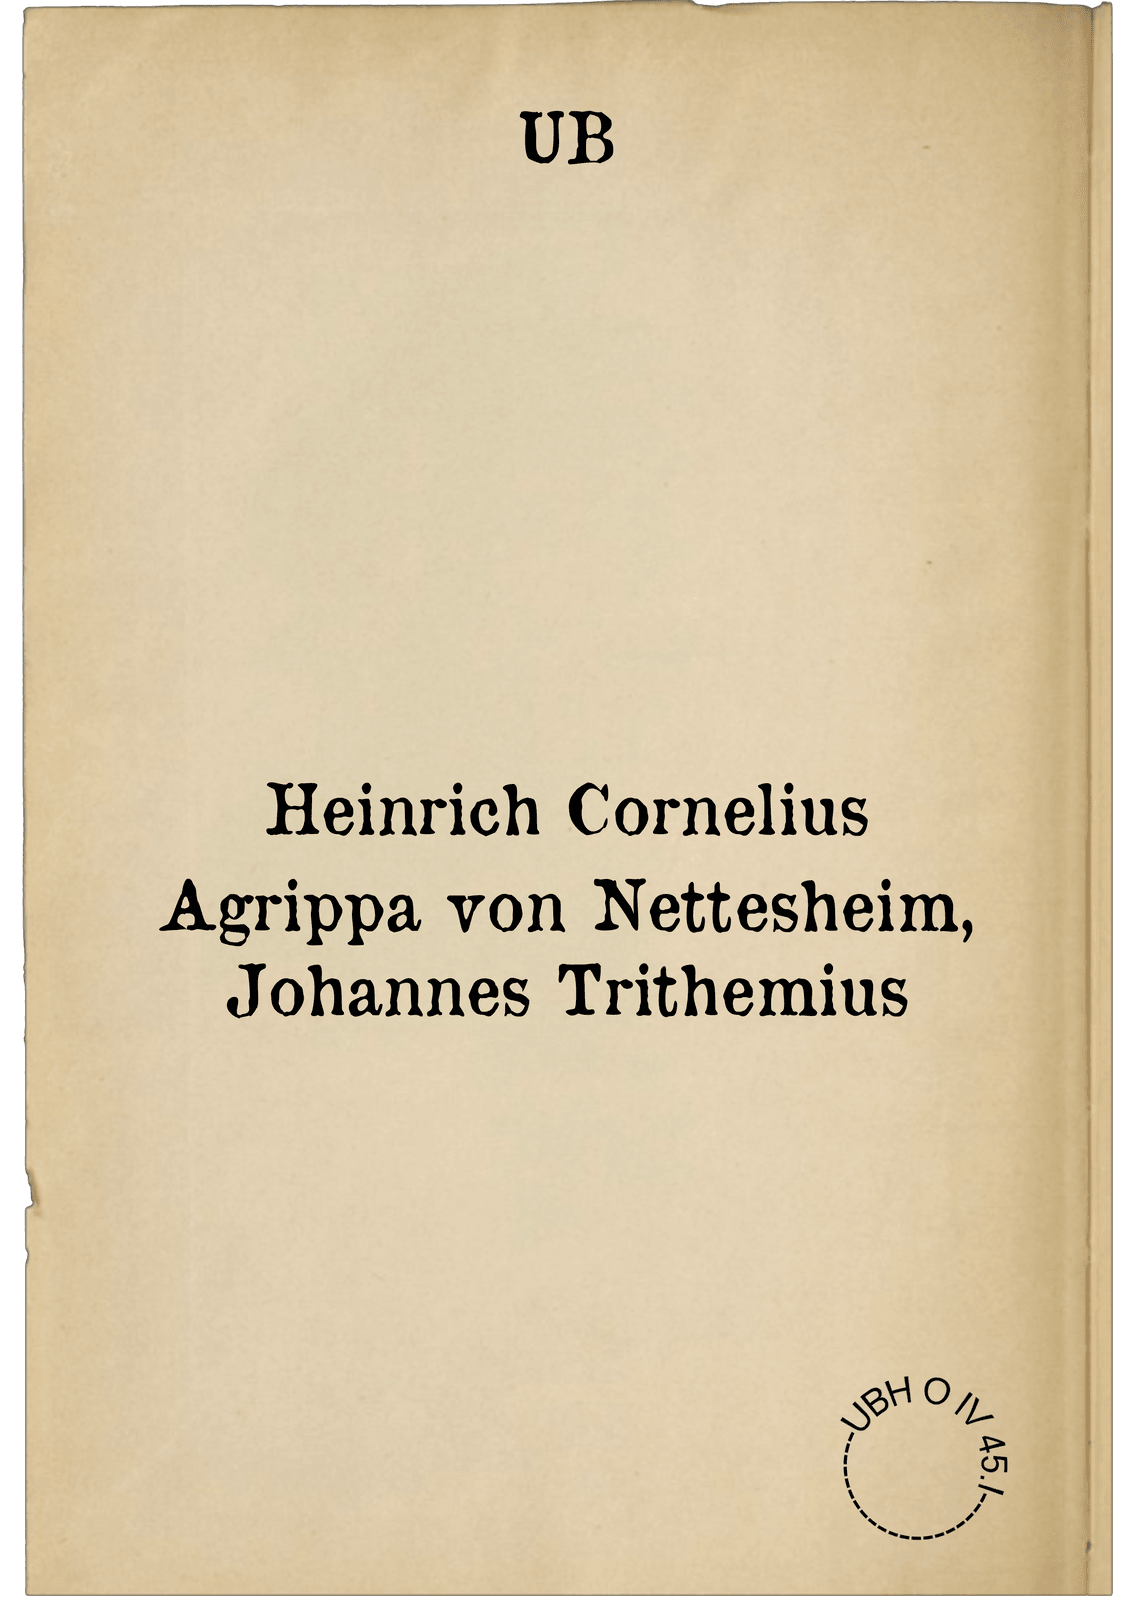 Heinrich Cornelius Agrippa von Nettesheim, Johannes Trithemius